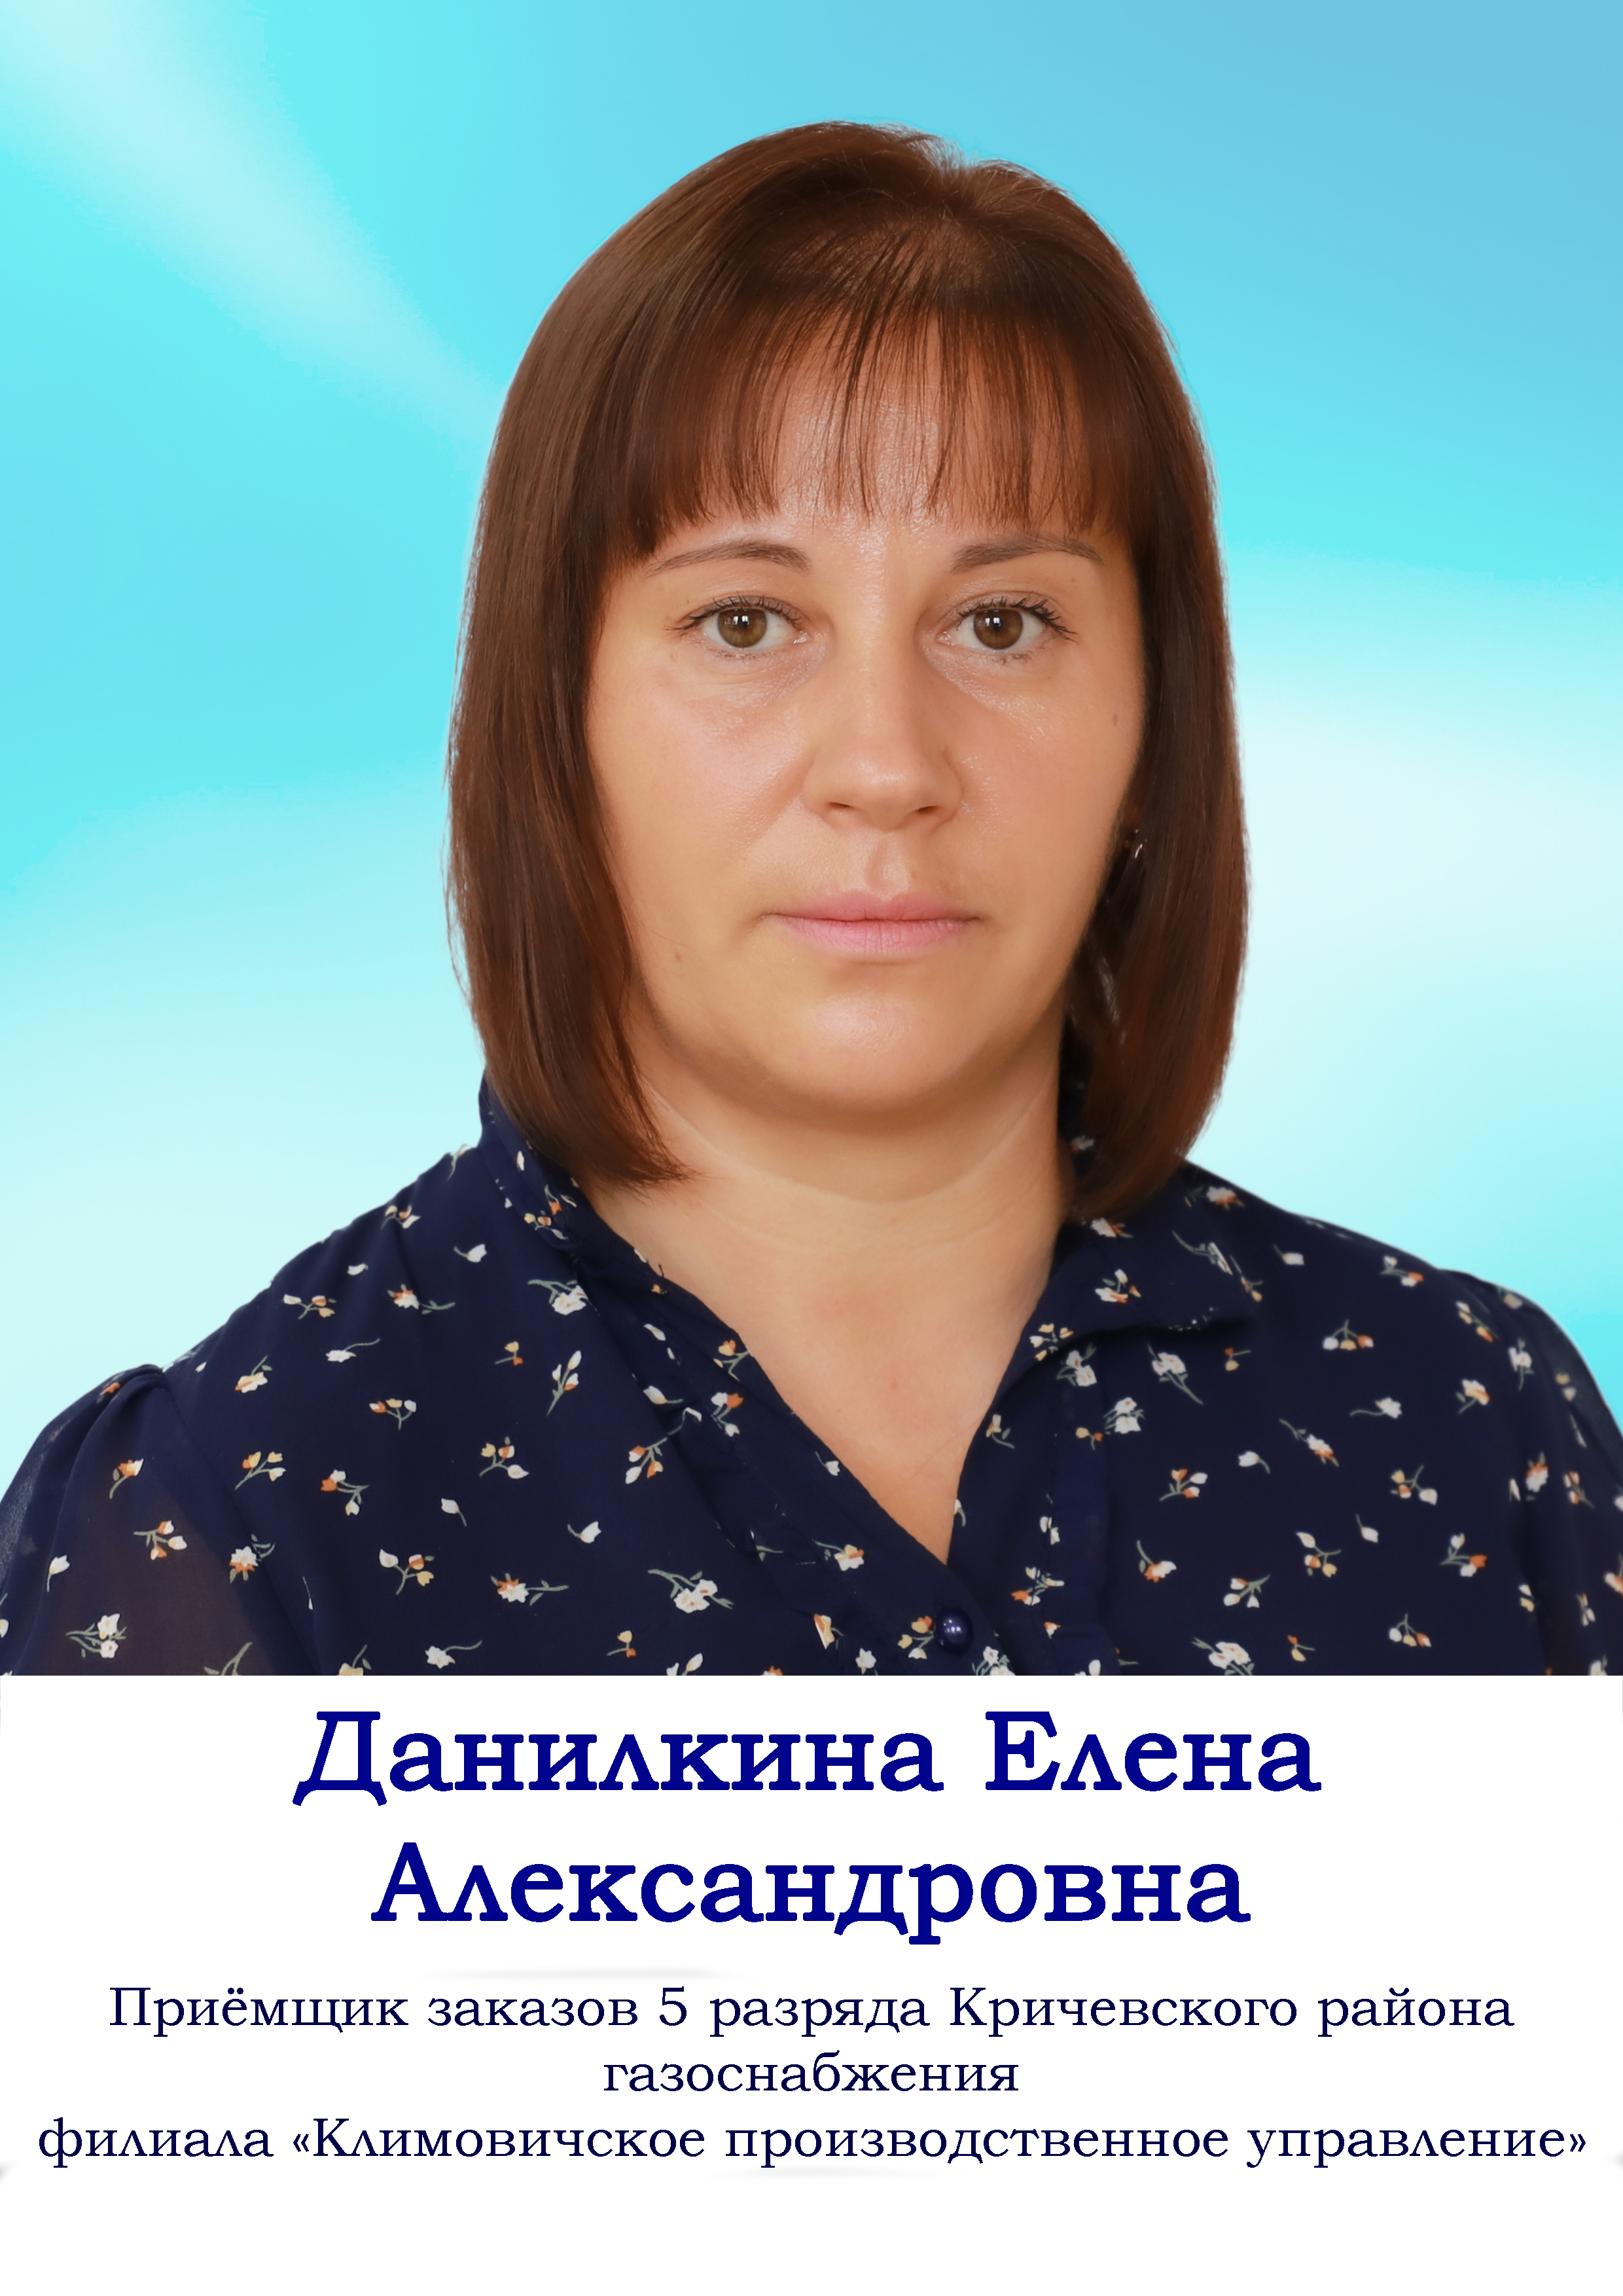 Данилкина Елена Александровна